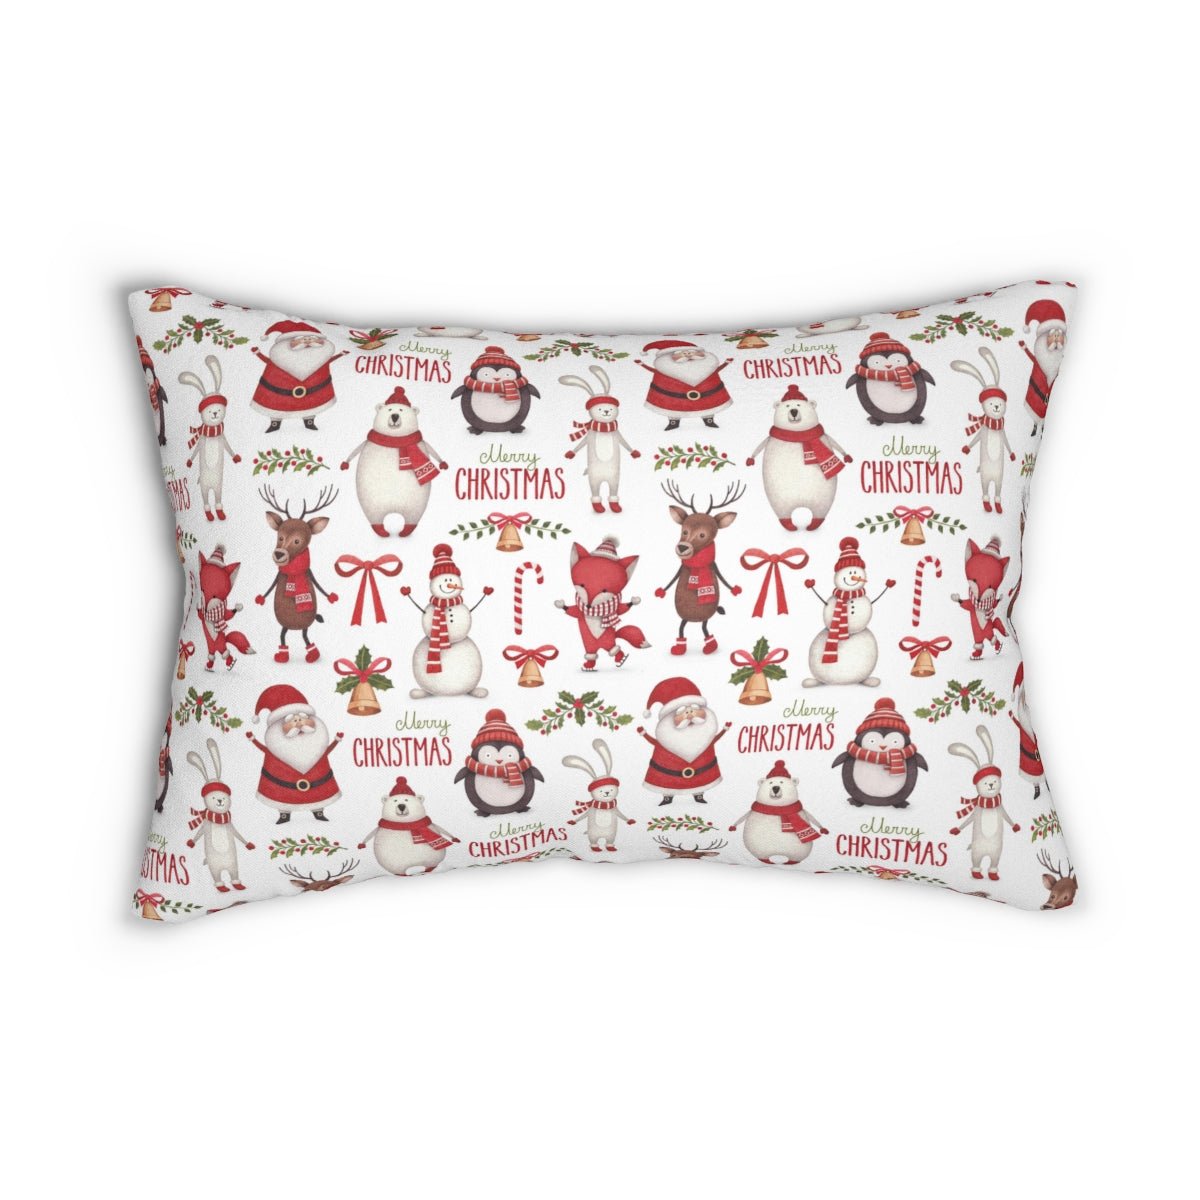 Christmas Santa Spun Polyester Lumbar Pillow - Puffin Lime